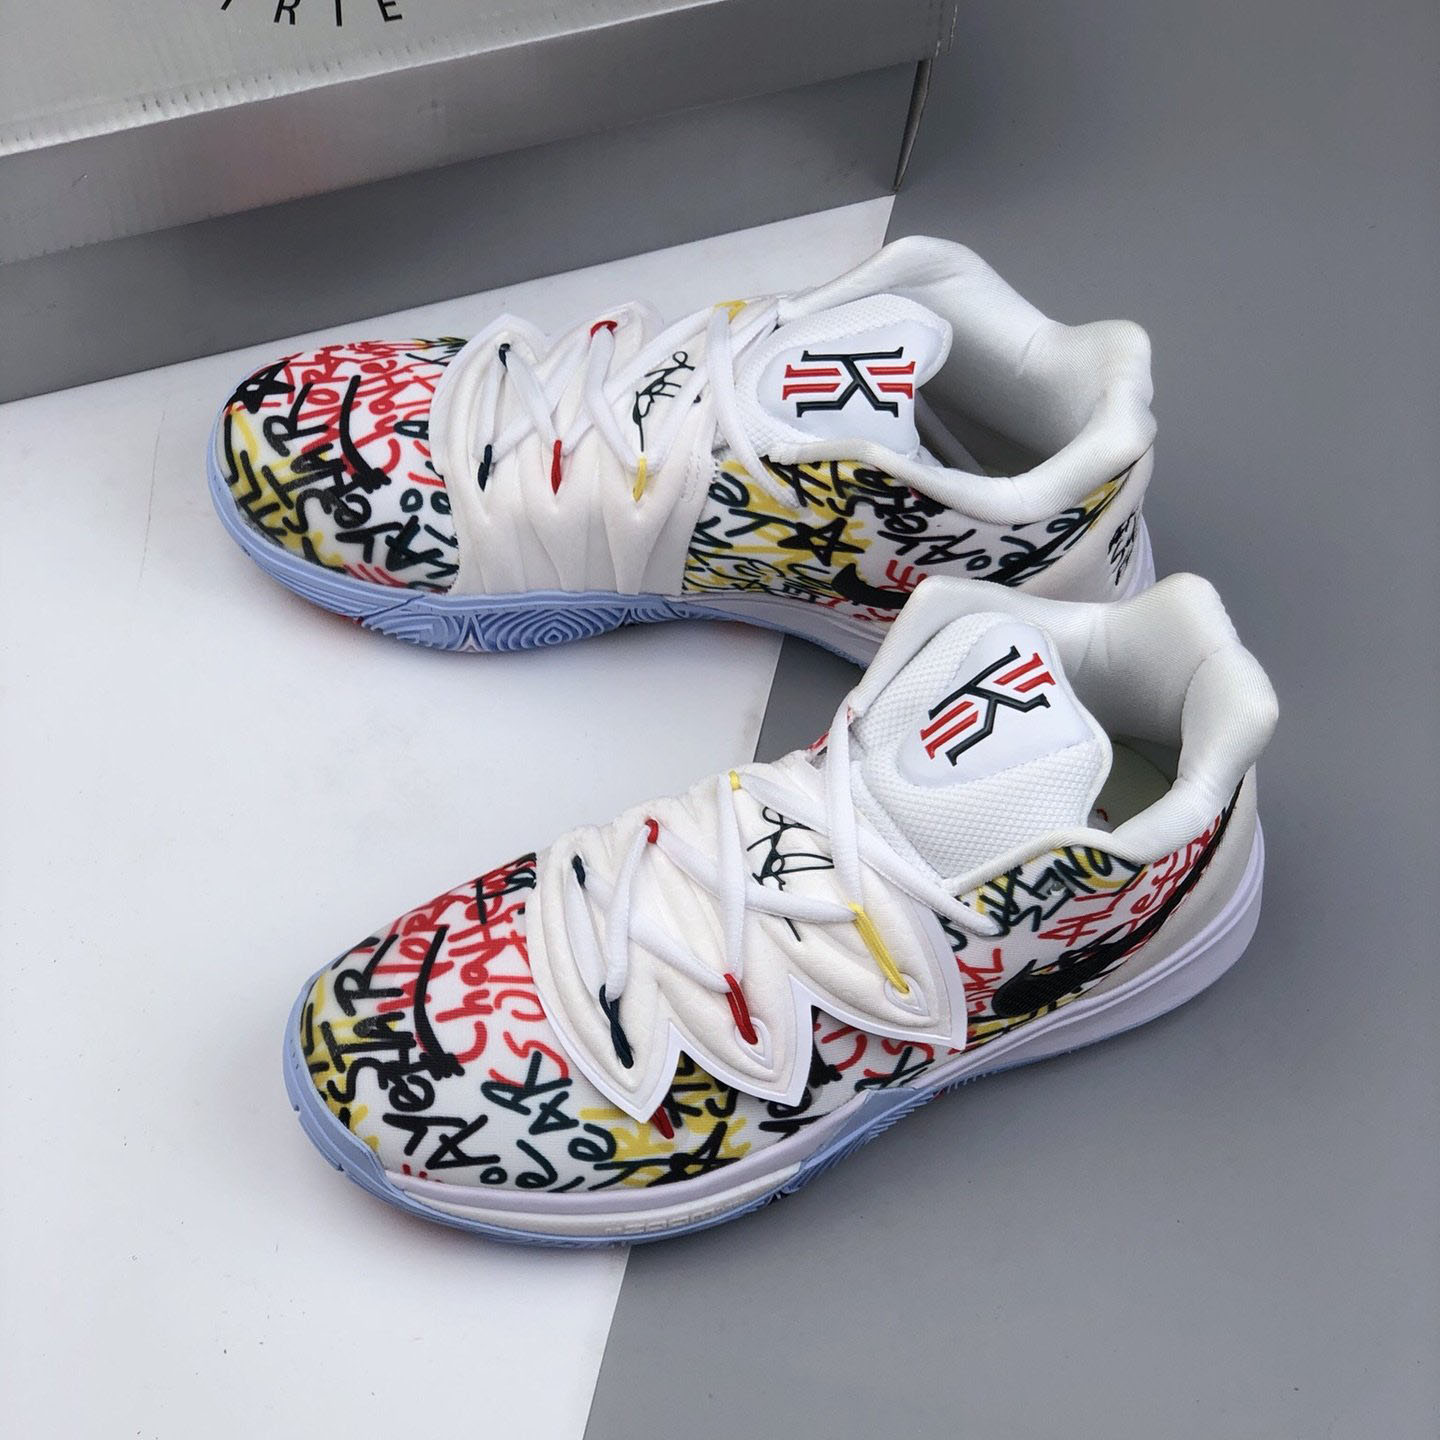 SpongeBob Nike Kyrie 5 Shoes Release Date Sneaker News